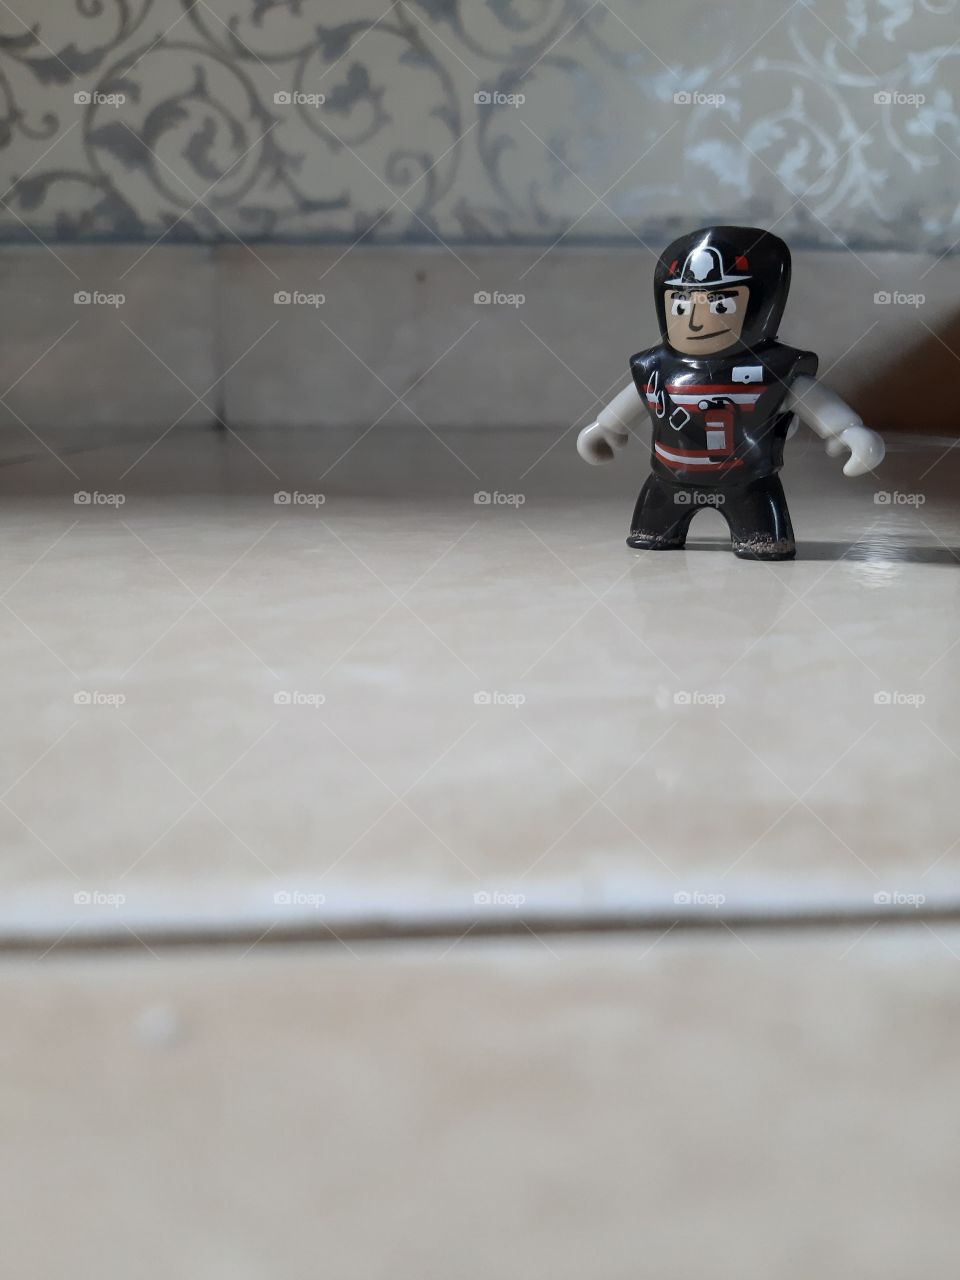 A mini black figure as a toy children